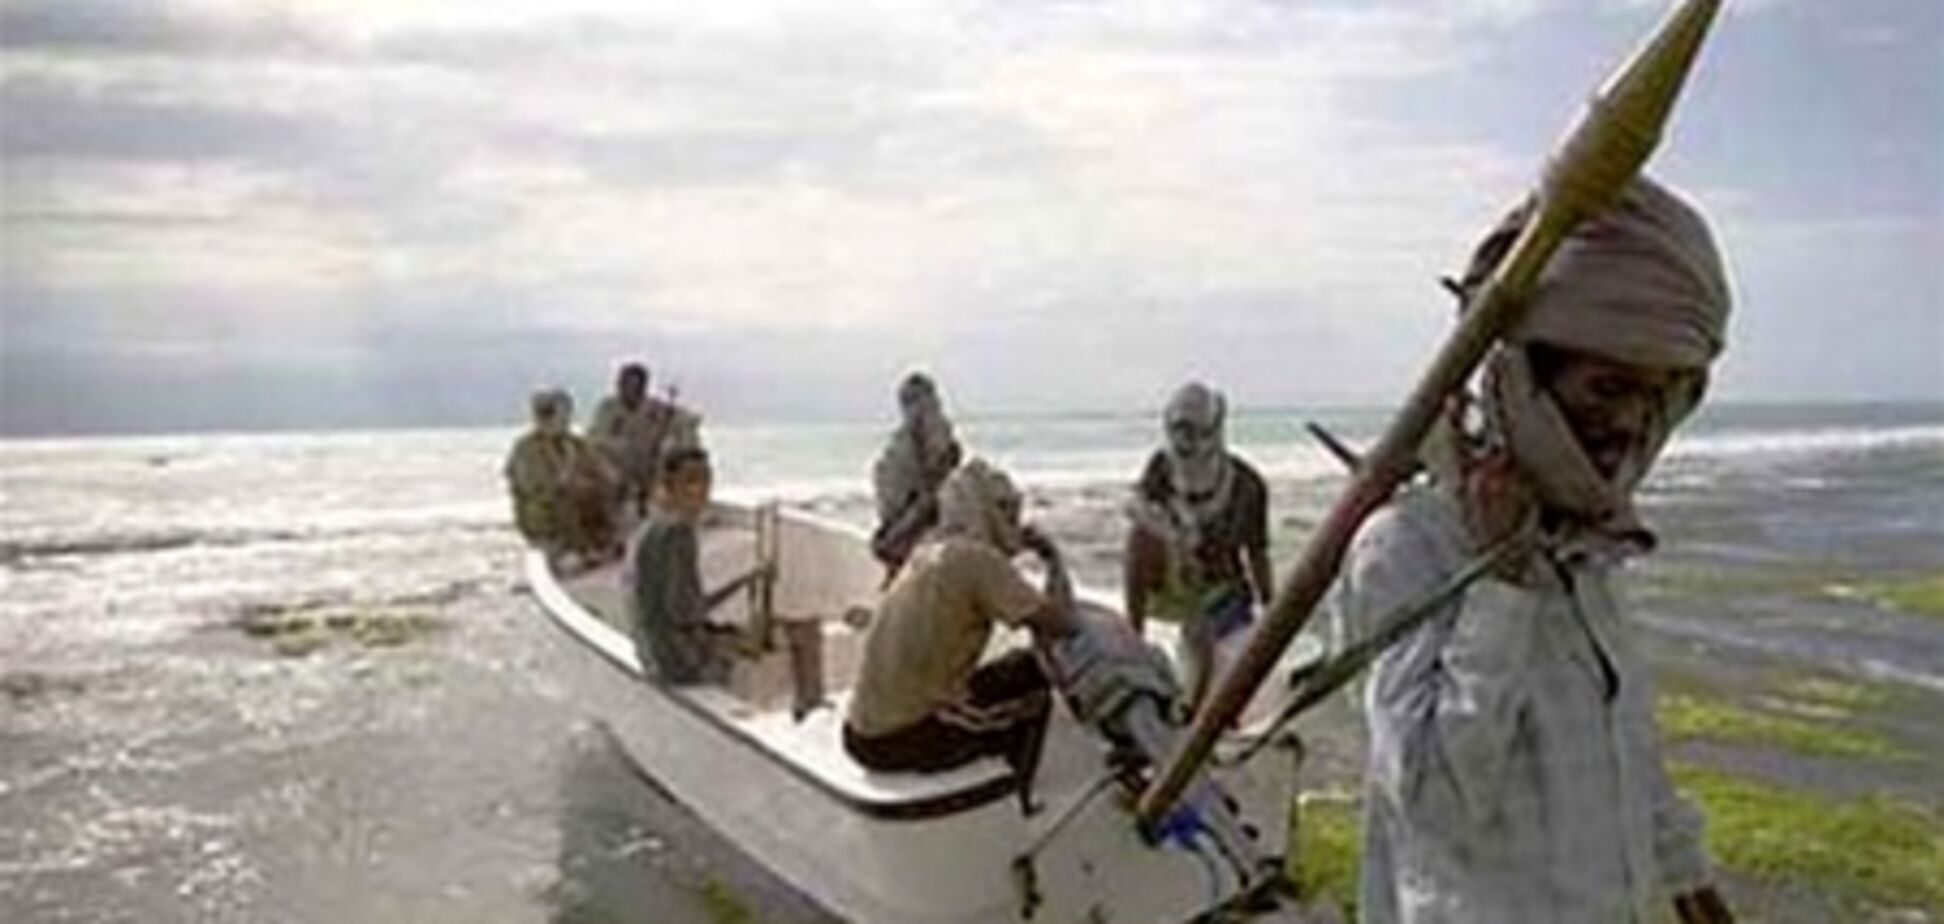 Сомалийские пираты избрали новую тактику, сменив камуфляж